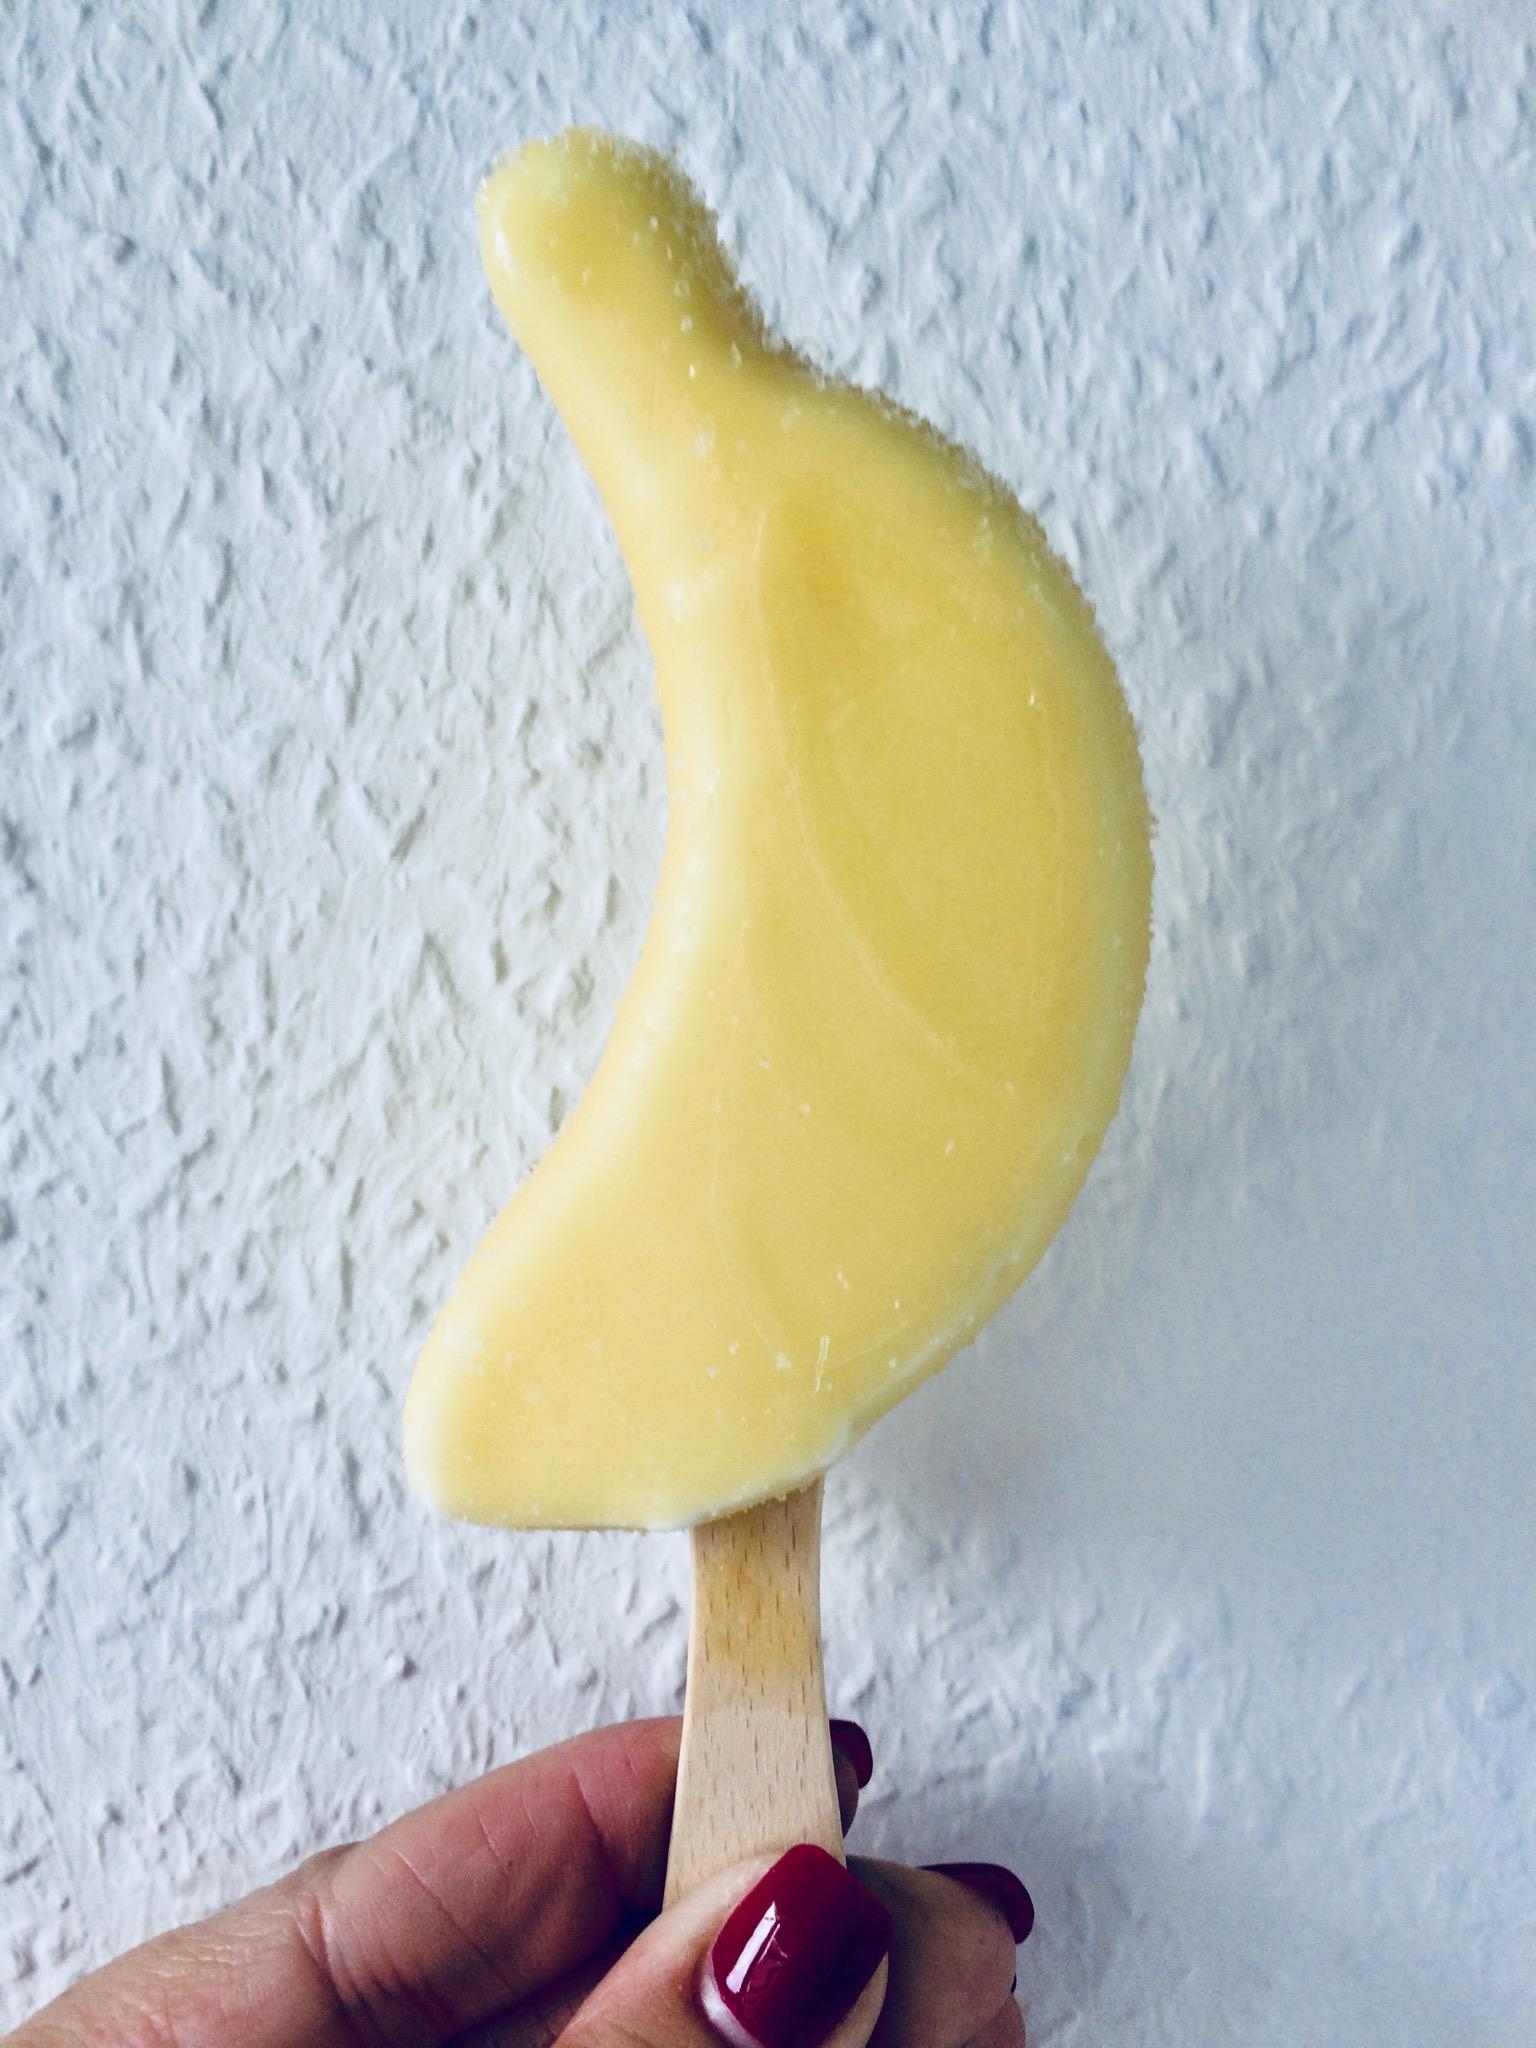 Bananaaa! 🍌 So ein #stylish cooler #snack 😋 #jummi #eisgehtimmer #sommer #food #gelb #banane